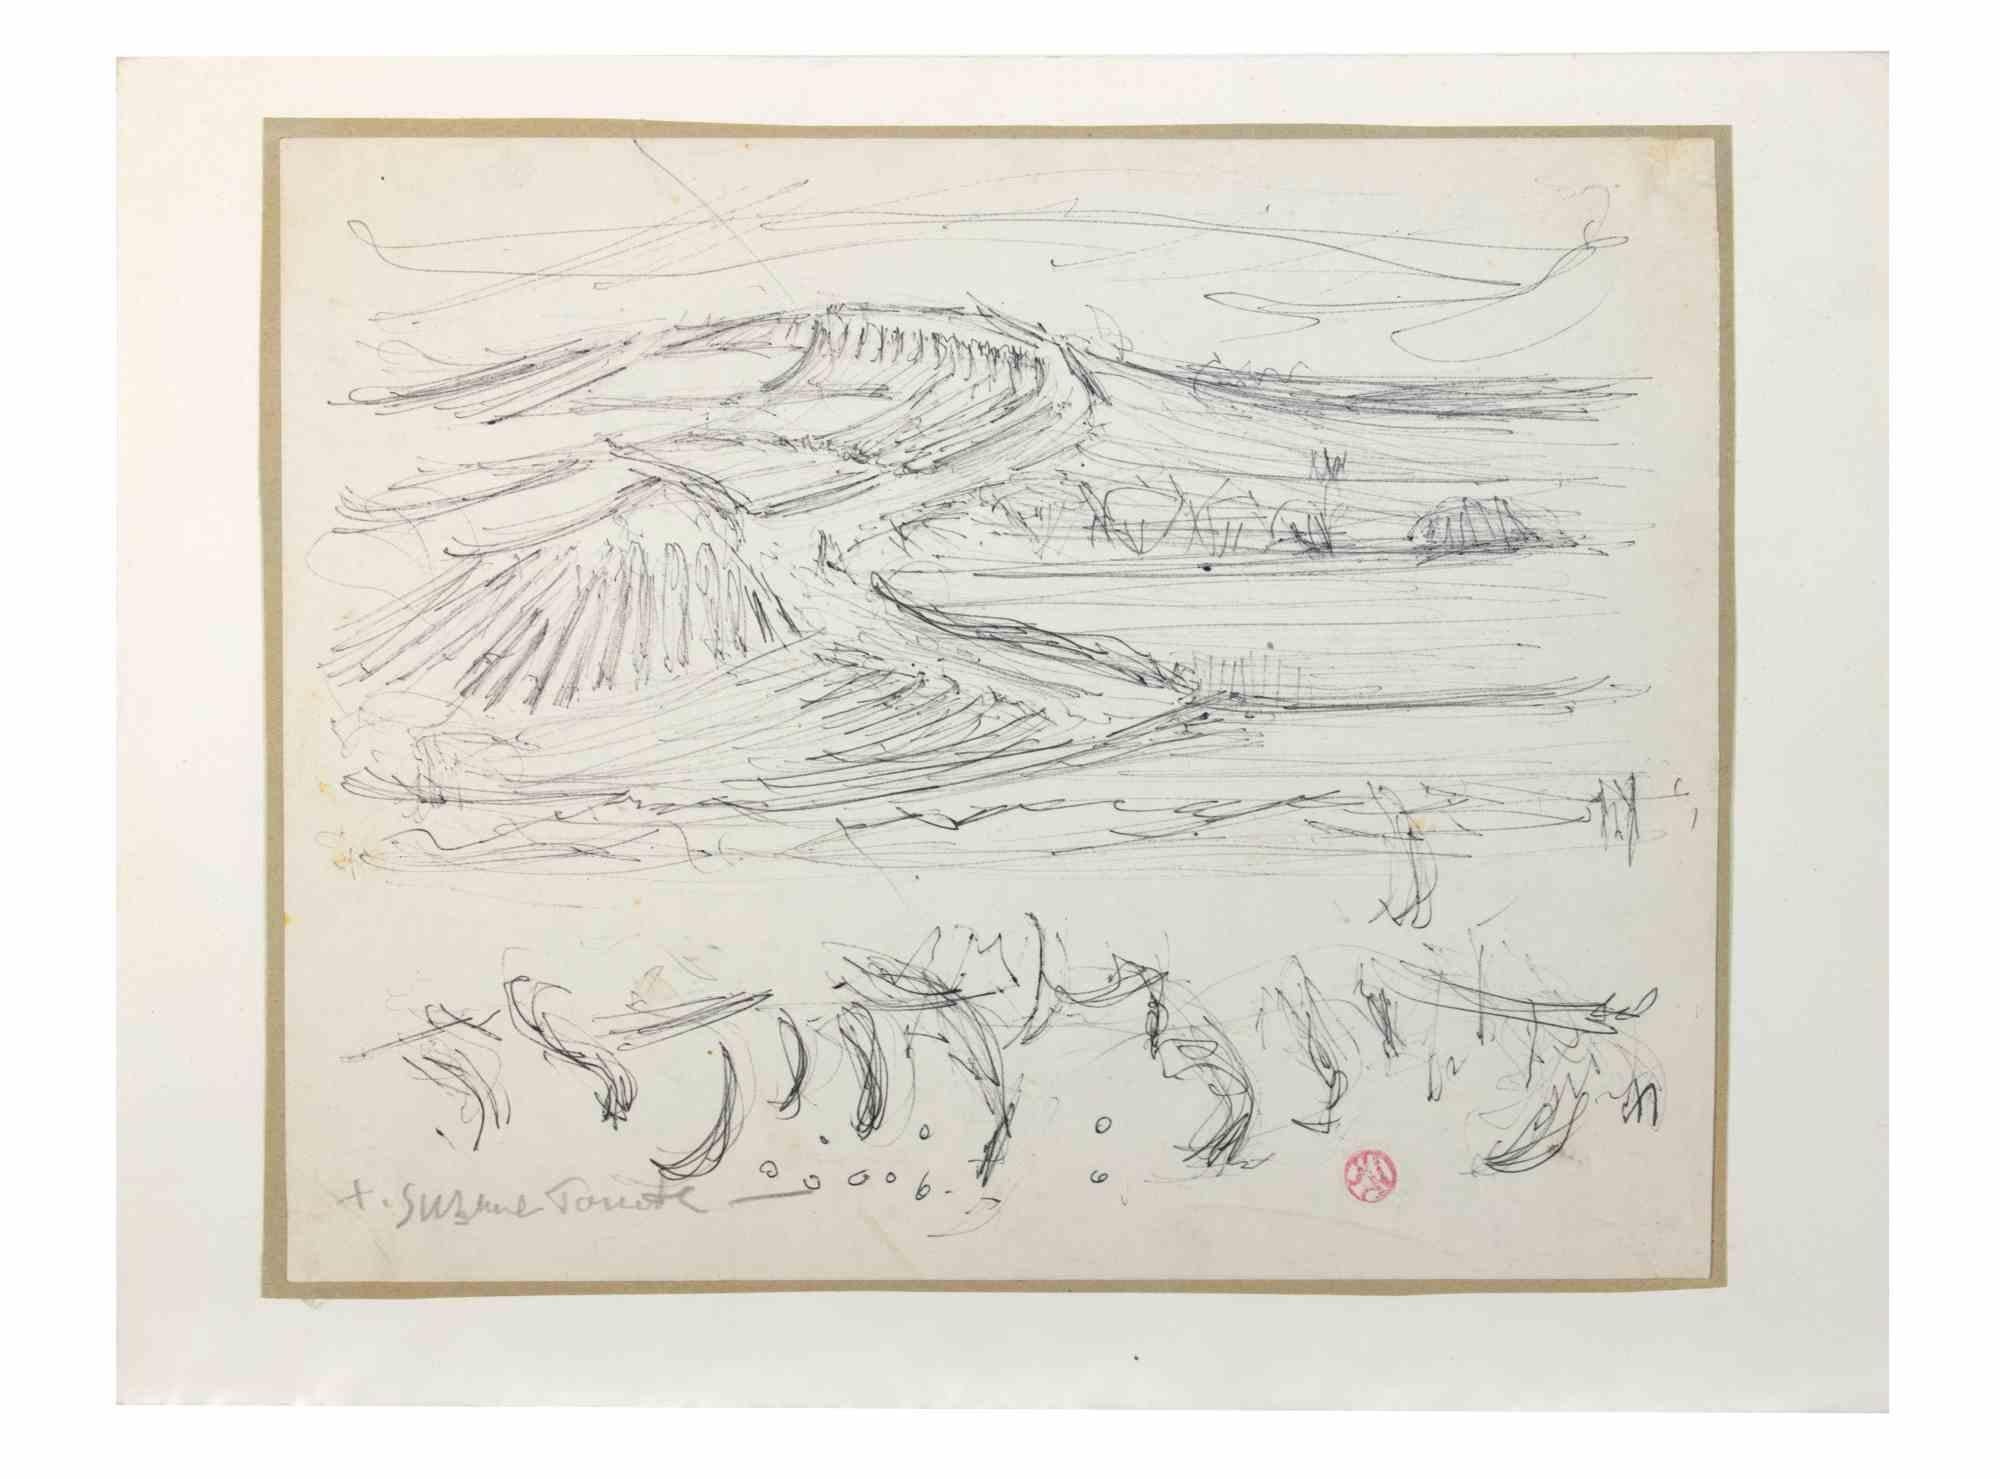 Landscape ist ein Kunstwerk von Susanne Tourte aus den 1940er Jahren. 

Stift auf Papier, 25 x 33 cm.

Handsigniert unten rechts und Stempel am rechten Rand.

Guter Zustand mit Ausnahme einiger Vergilbungen auf dem Papier, die auf die Zeit